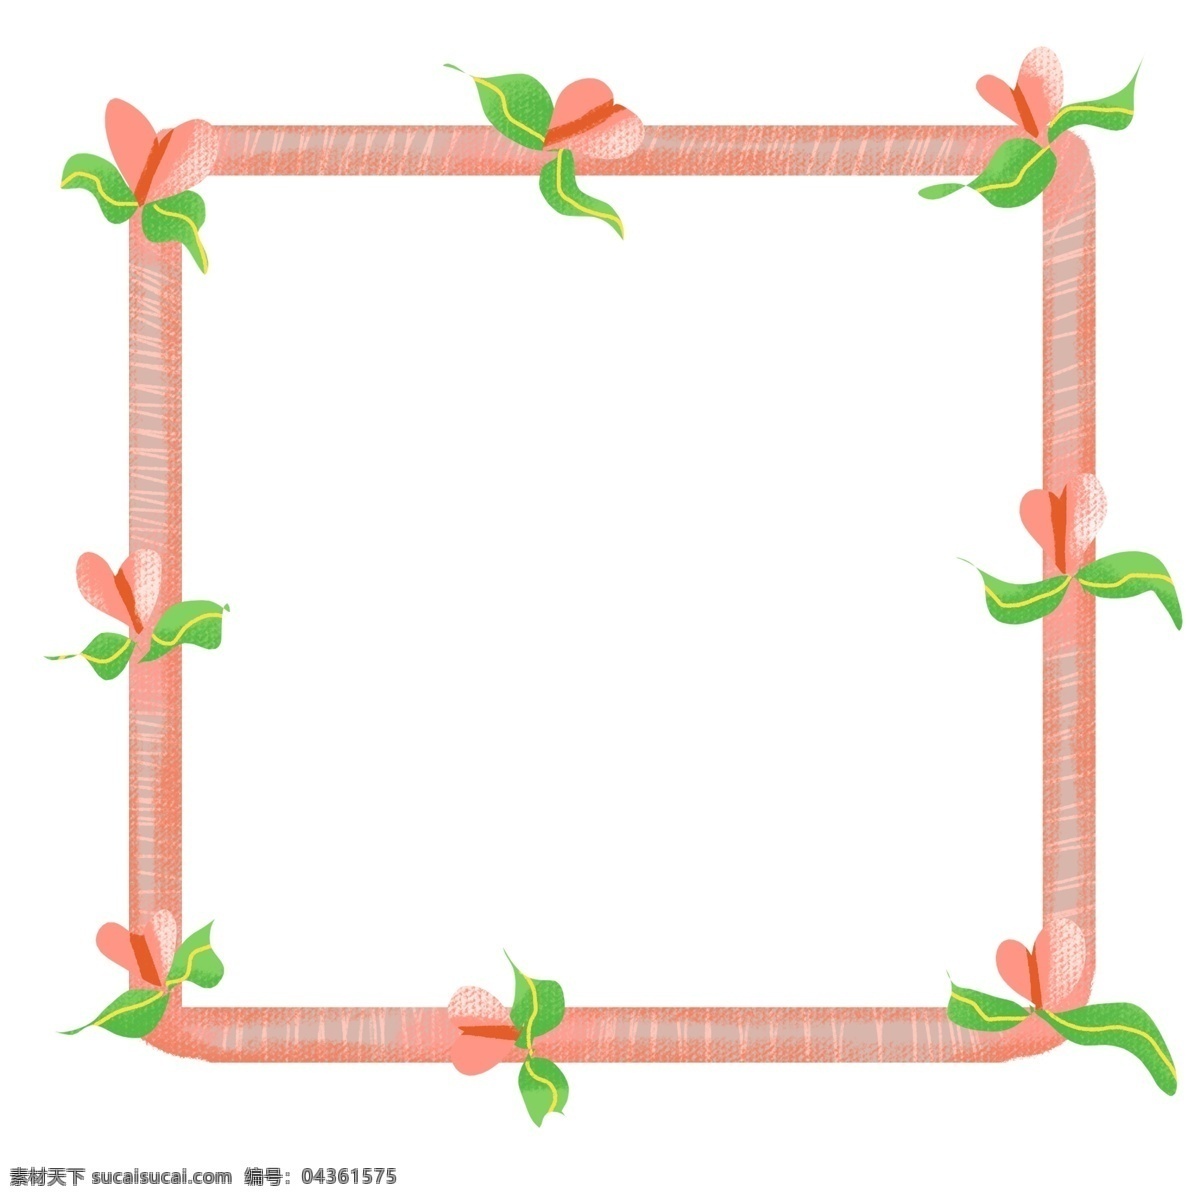 春夏 粉色 可爱 花鸟 边框 绿色 粉嫩 正方形 花朵 春天 夏天 花边 框架 装饰 实用 温暖 生机 活力 植物 花朵边框